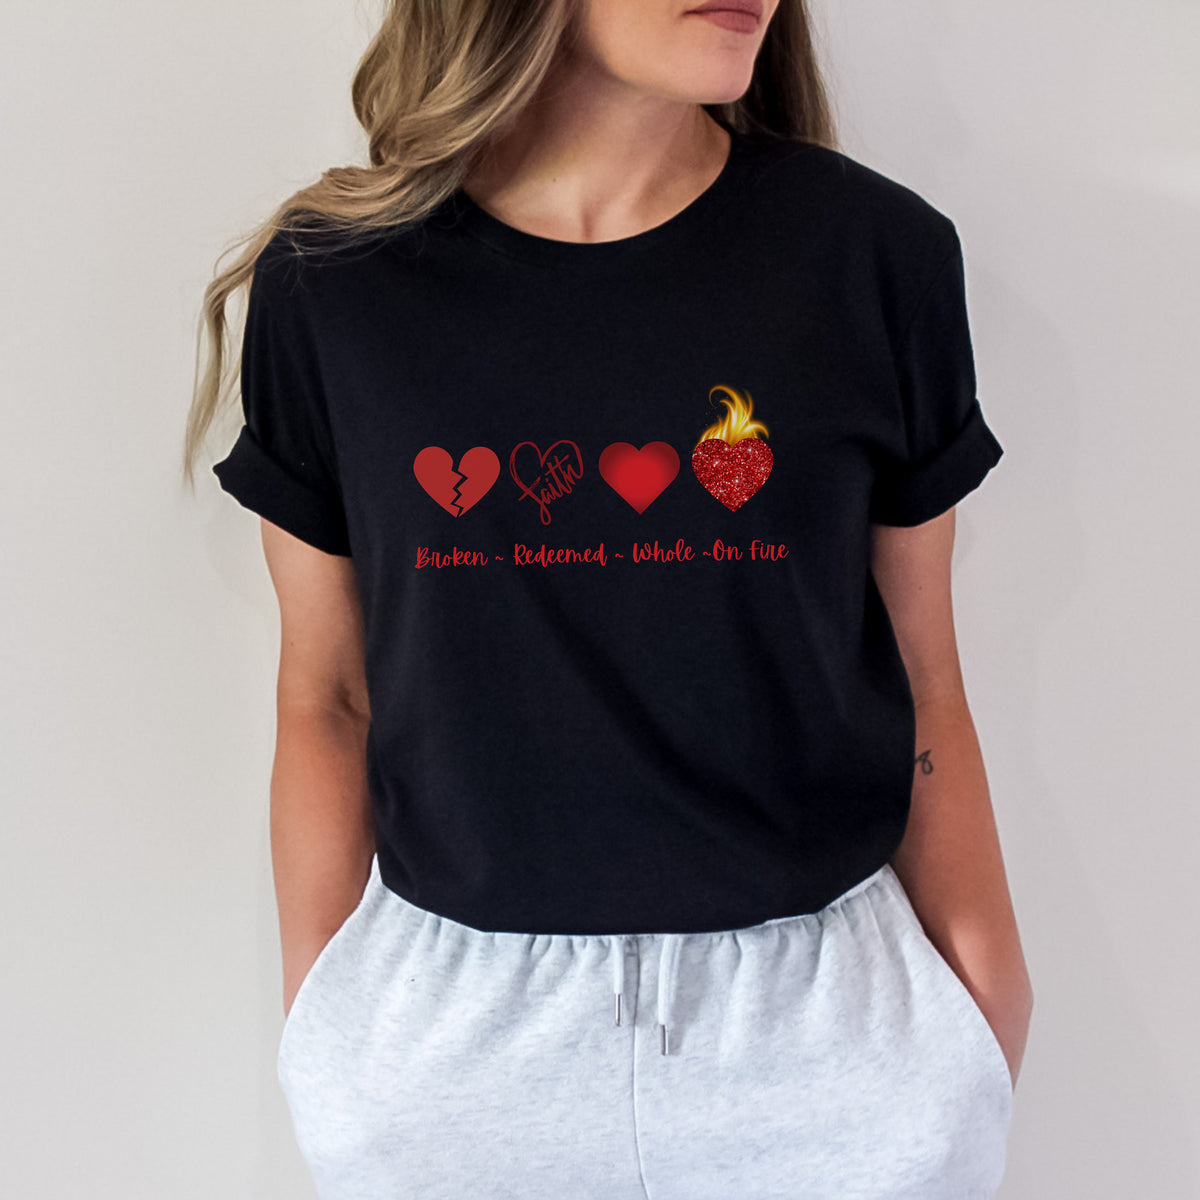 Broken Hearts Redeemed Red Lettering Shirt, Broken Redeemed Whole Heart Shirt, Hearts on Fire Christian Shirt, Women's Christian Shirt